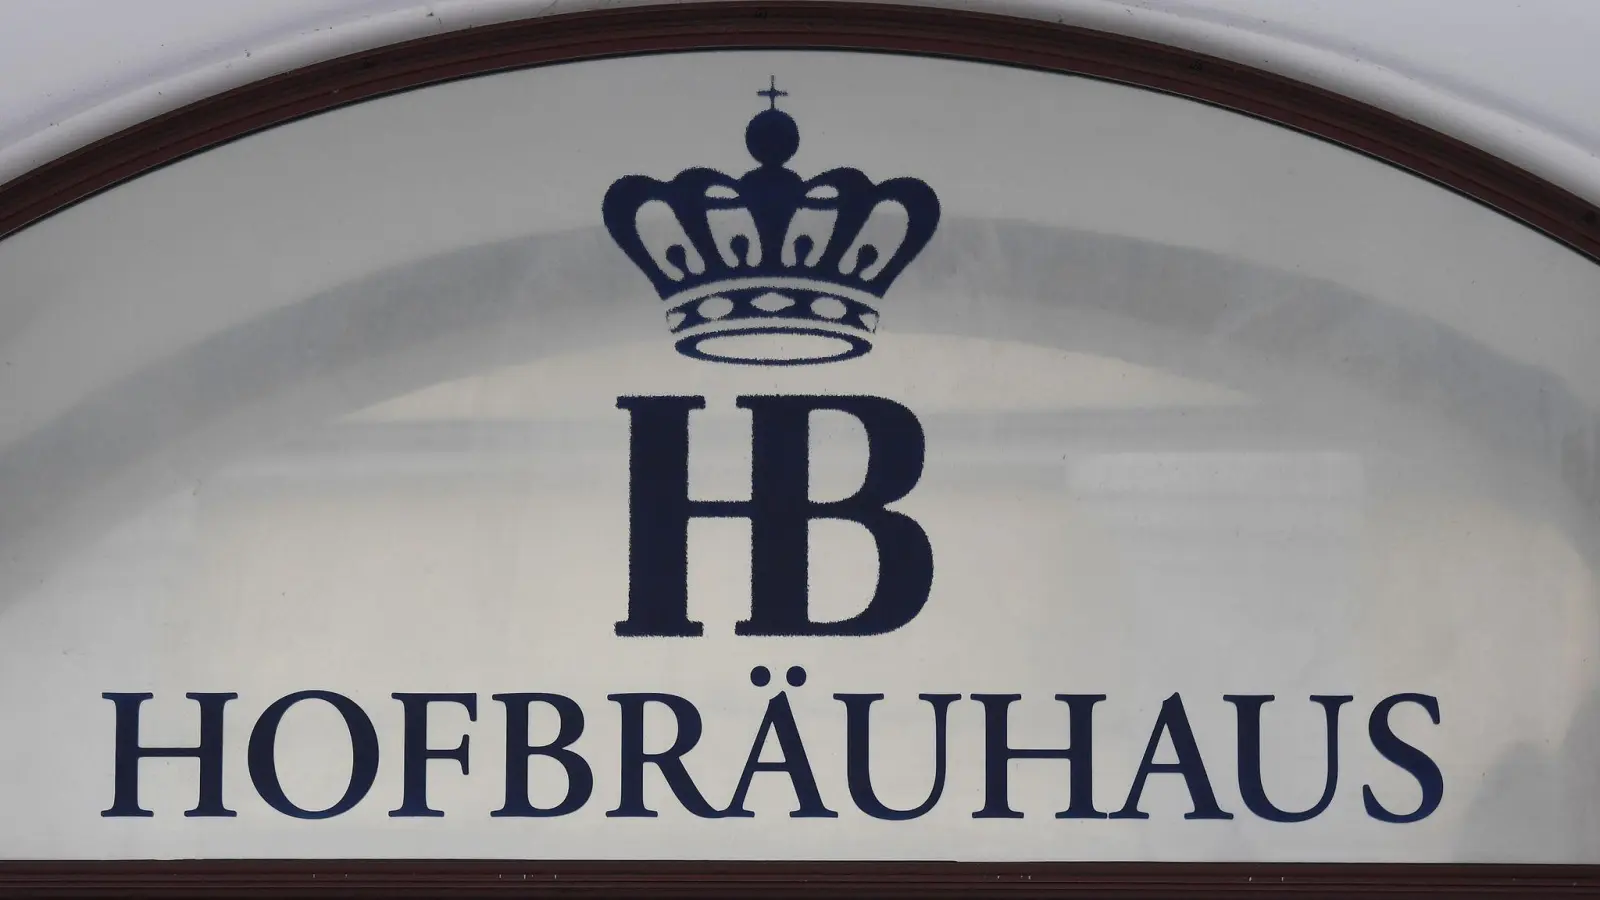 Das Logo des Wirtshaus Hofbräuhaus. Dort hat ein Amerikaner vor mehr als 50 Jahren einen Maßkrug geklaut. (Bild: Angelika Warmuth/dpa)